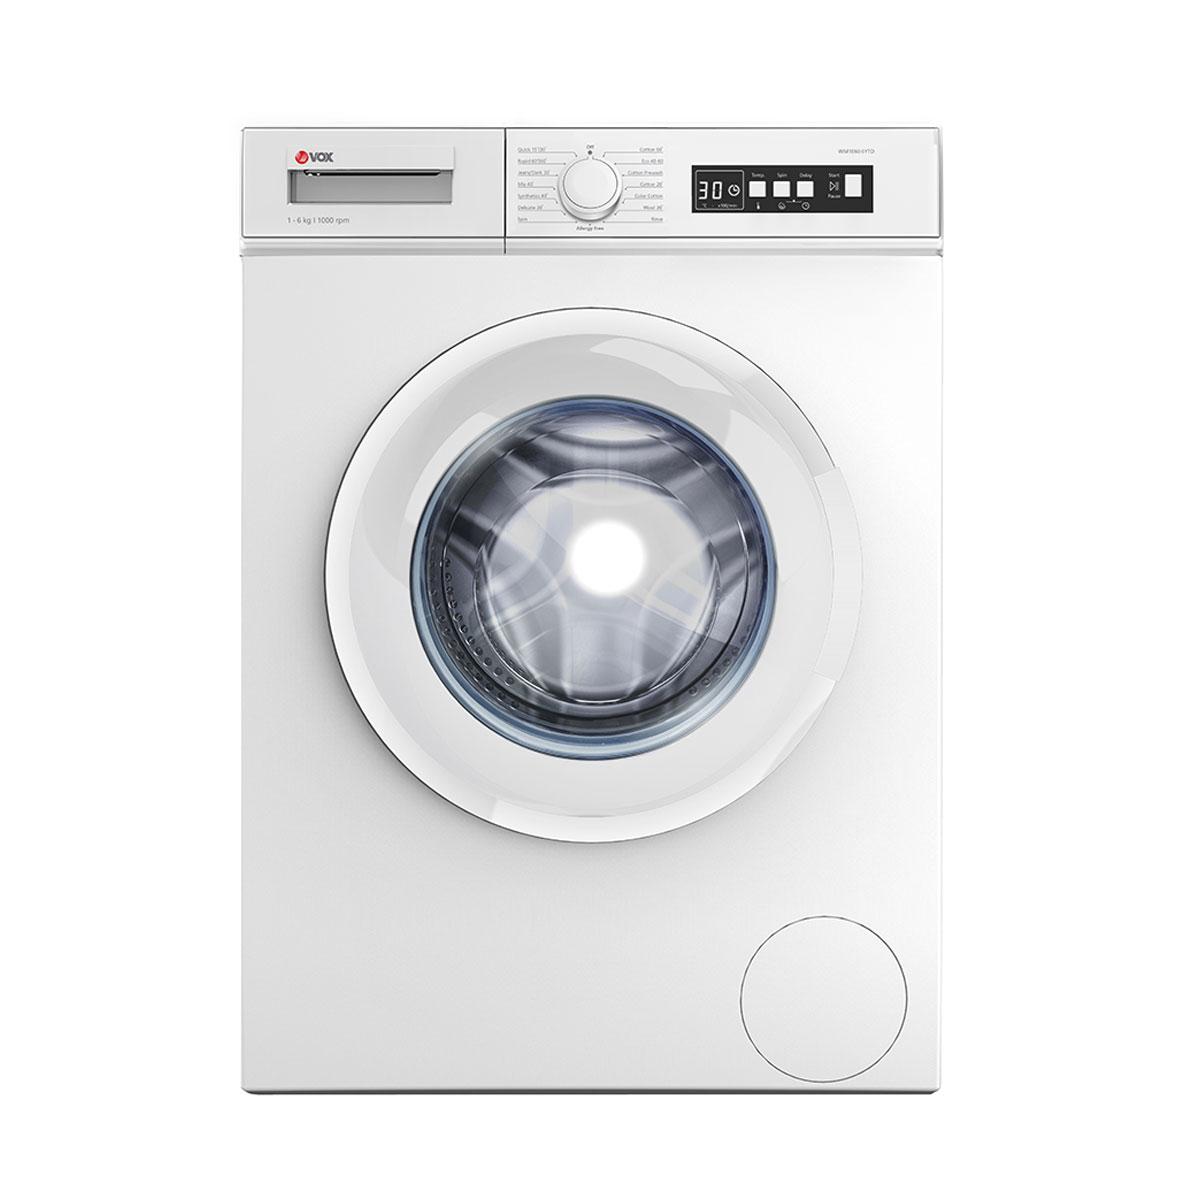 Selected image for VOX Mašina za pranje veša WM1060-SYTD